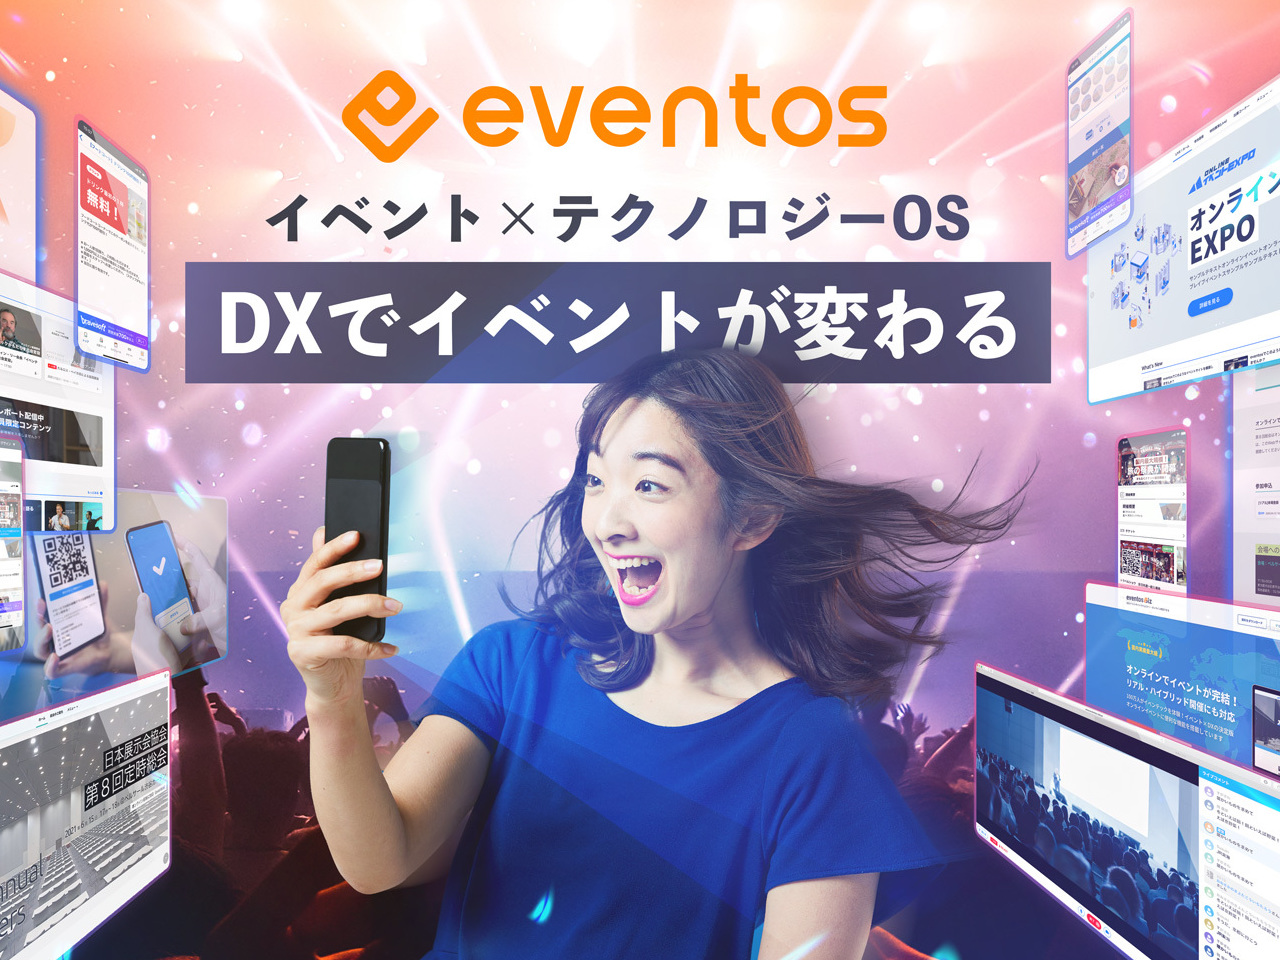 イベント利用に特化した自社アプリ”eventos”はマーケティングツールとして東京ゲームショーや東京モーターショーをはじめとした大手大規模博覧会やイベントで続々と採用が決まっている注目プロダクト。